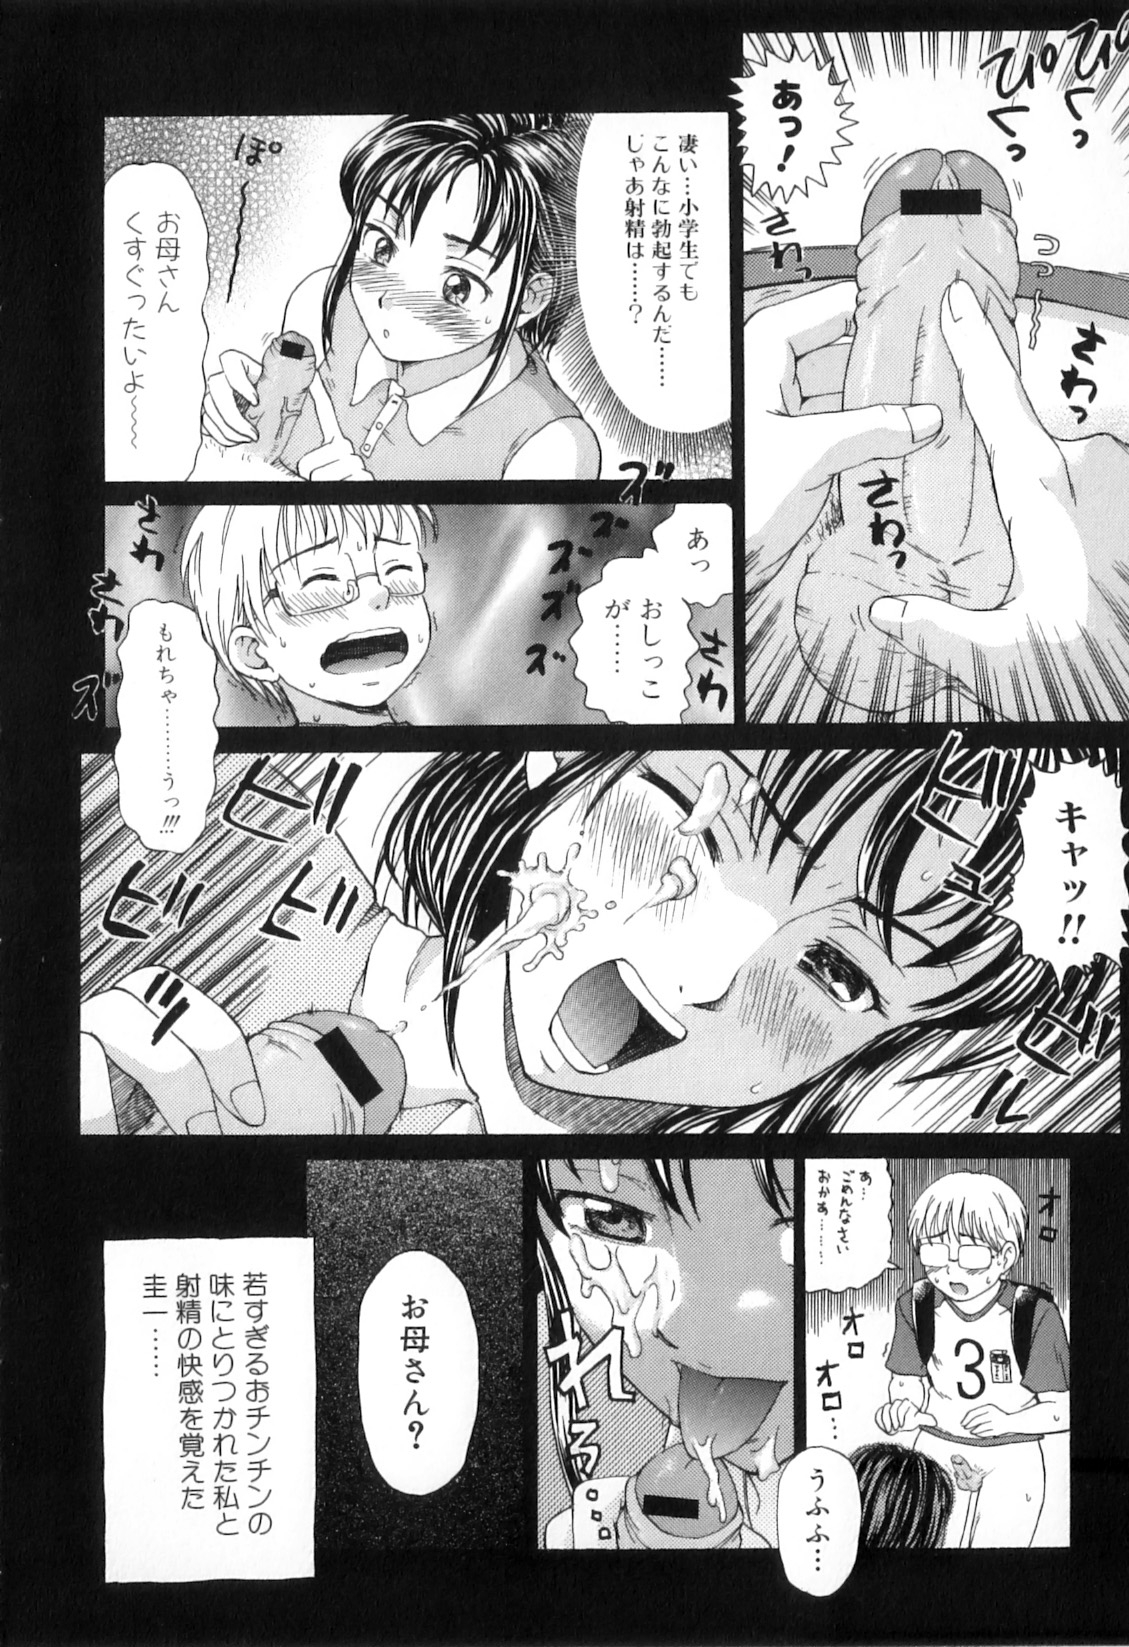 [Anthology] Boshi Chijou Kitan 2 page 26 full